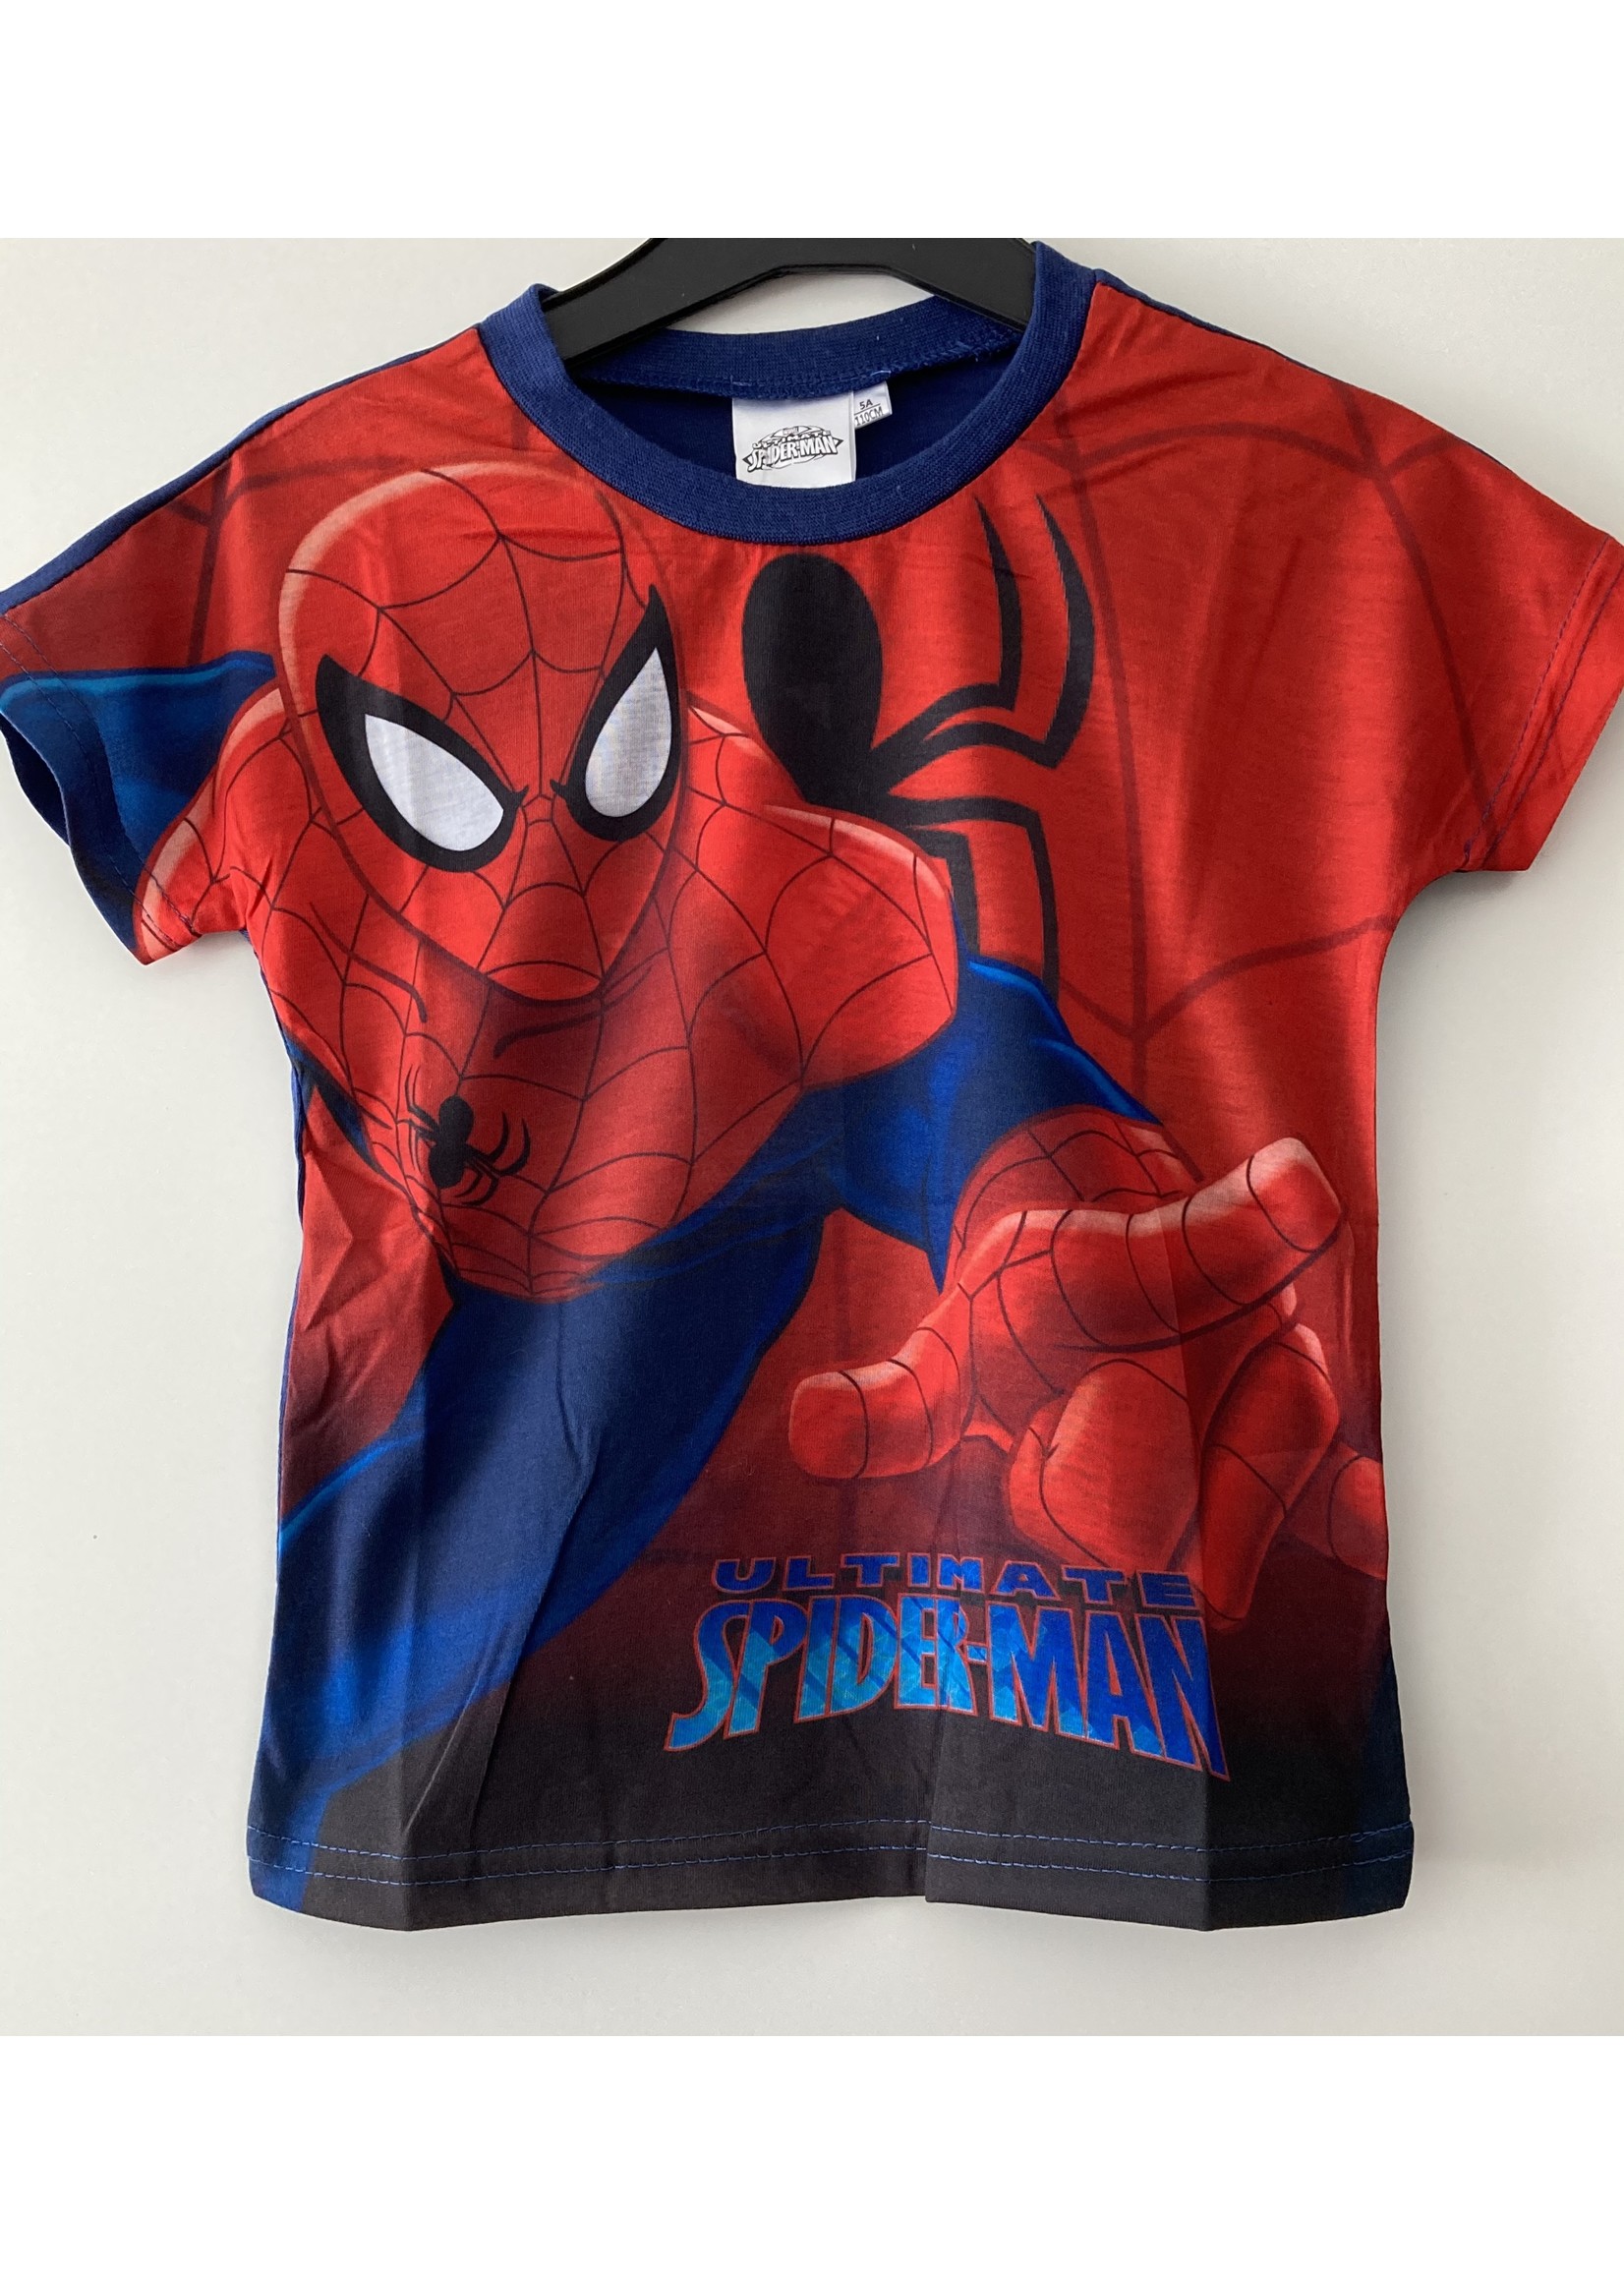 Marvel Spiderman T-shirt van Marvel rood